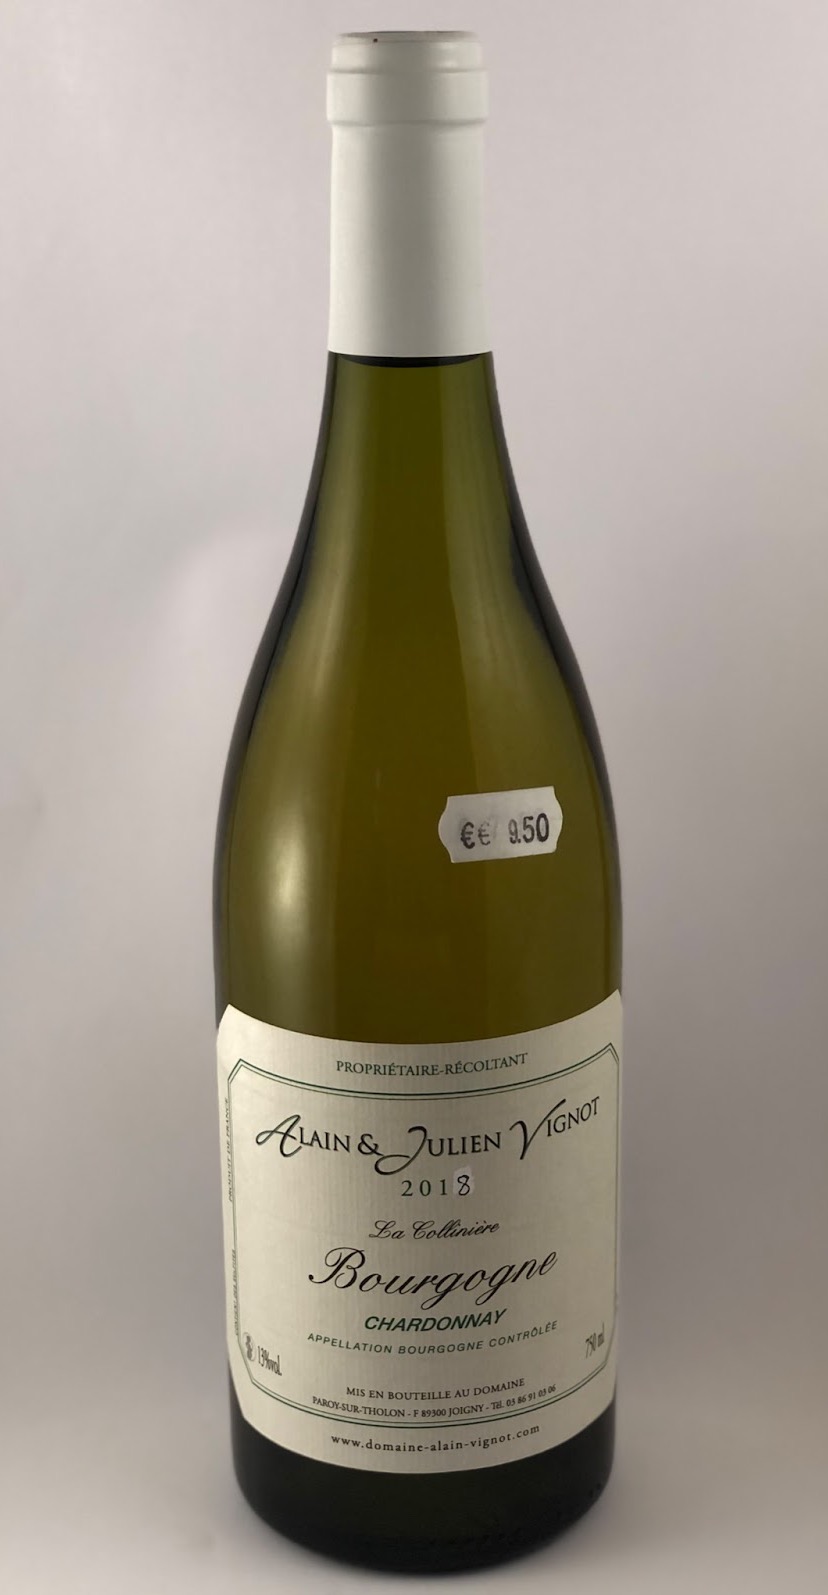 Vin blanc Alain & Julien Vignot Bourgogne Chardonnay ABC – 13% - 750 ml